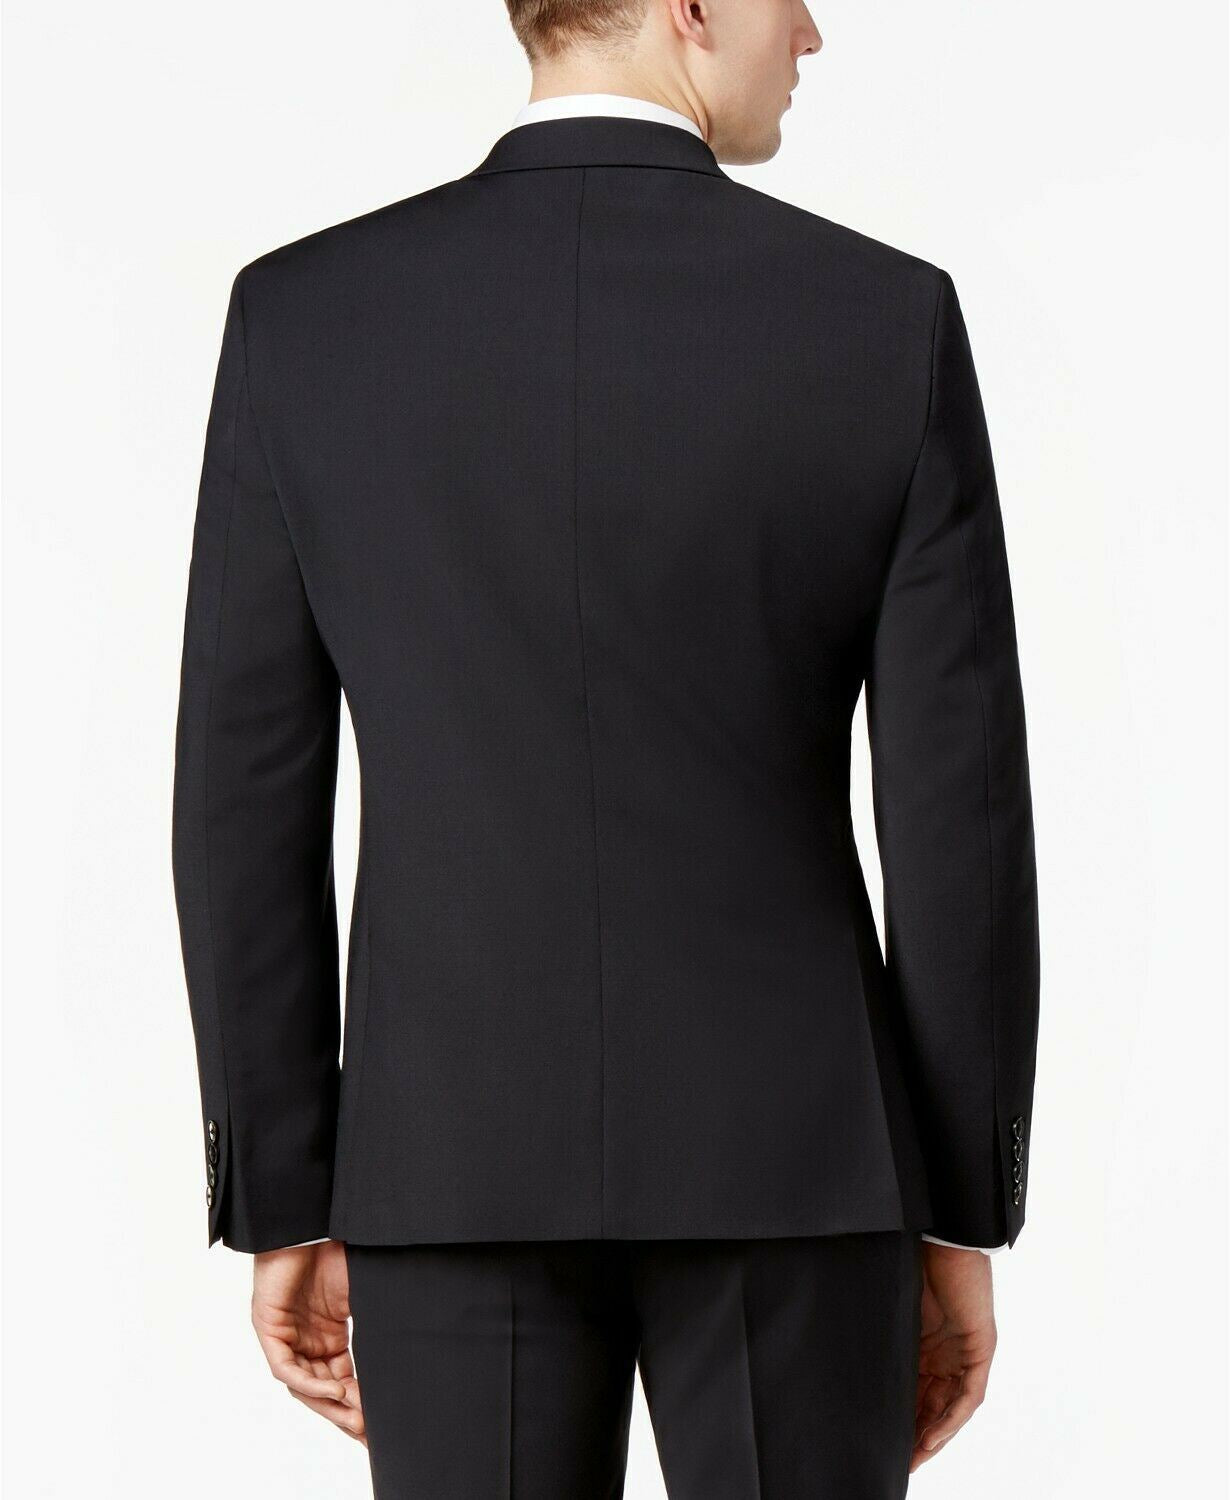 Bar III Mens Skinny Fit Wrinkle-Resistant Suit 40L / 34 x 32 Black Flat Pant